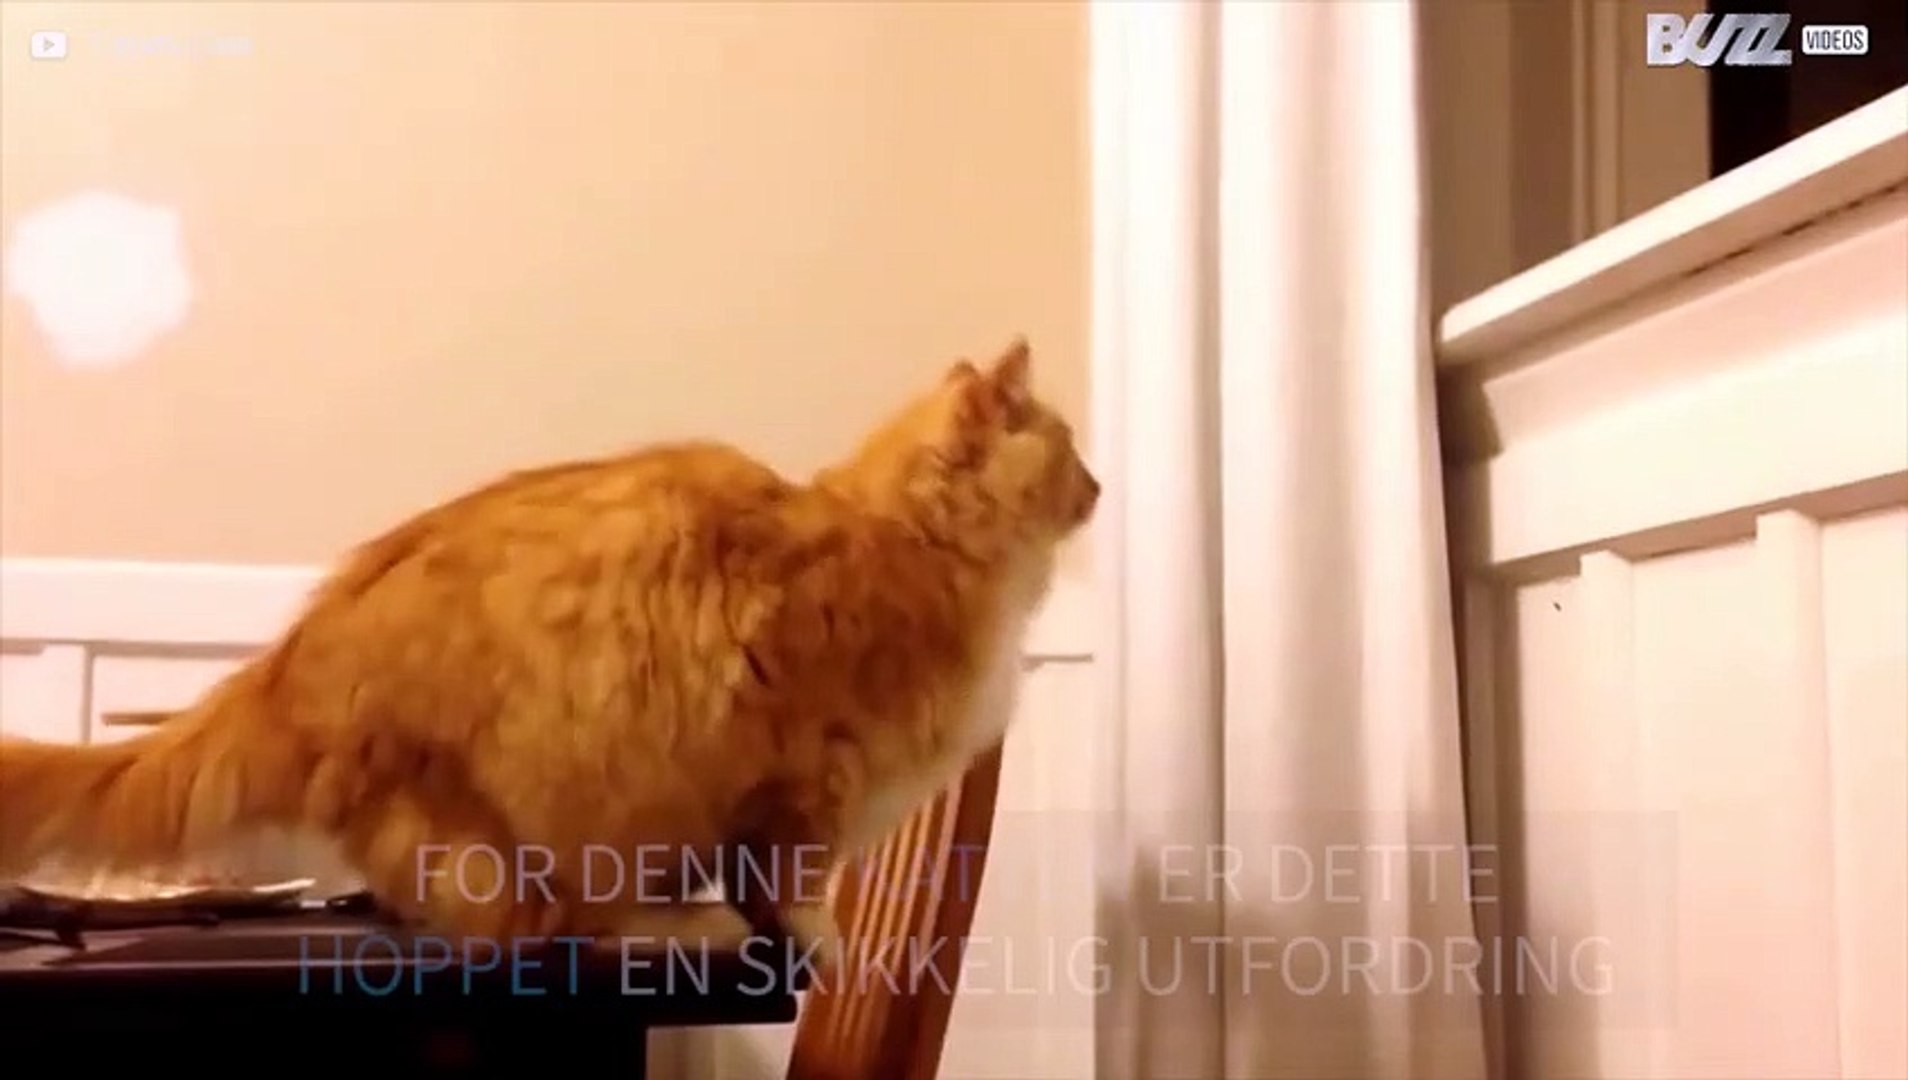 Katten greier ikke det risikable hoppet - video Dailymotion